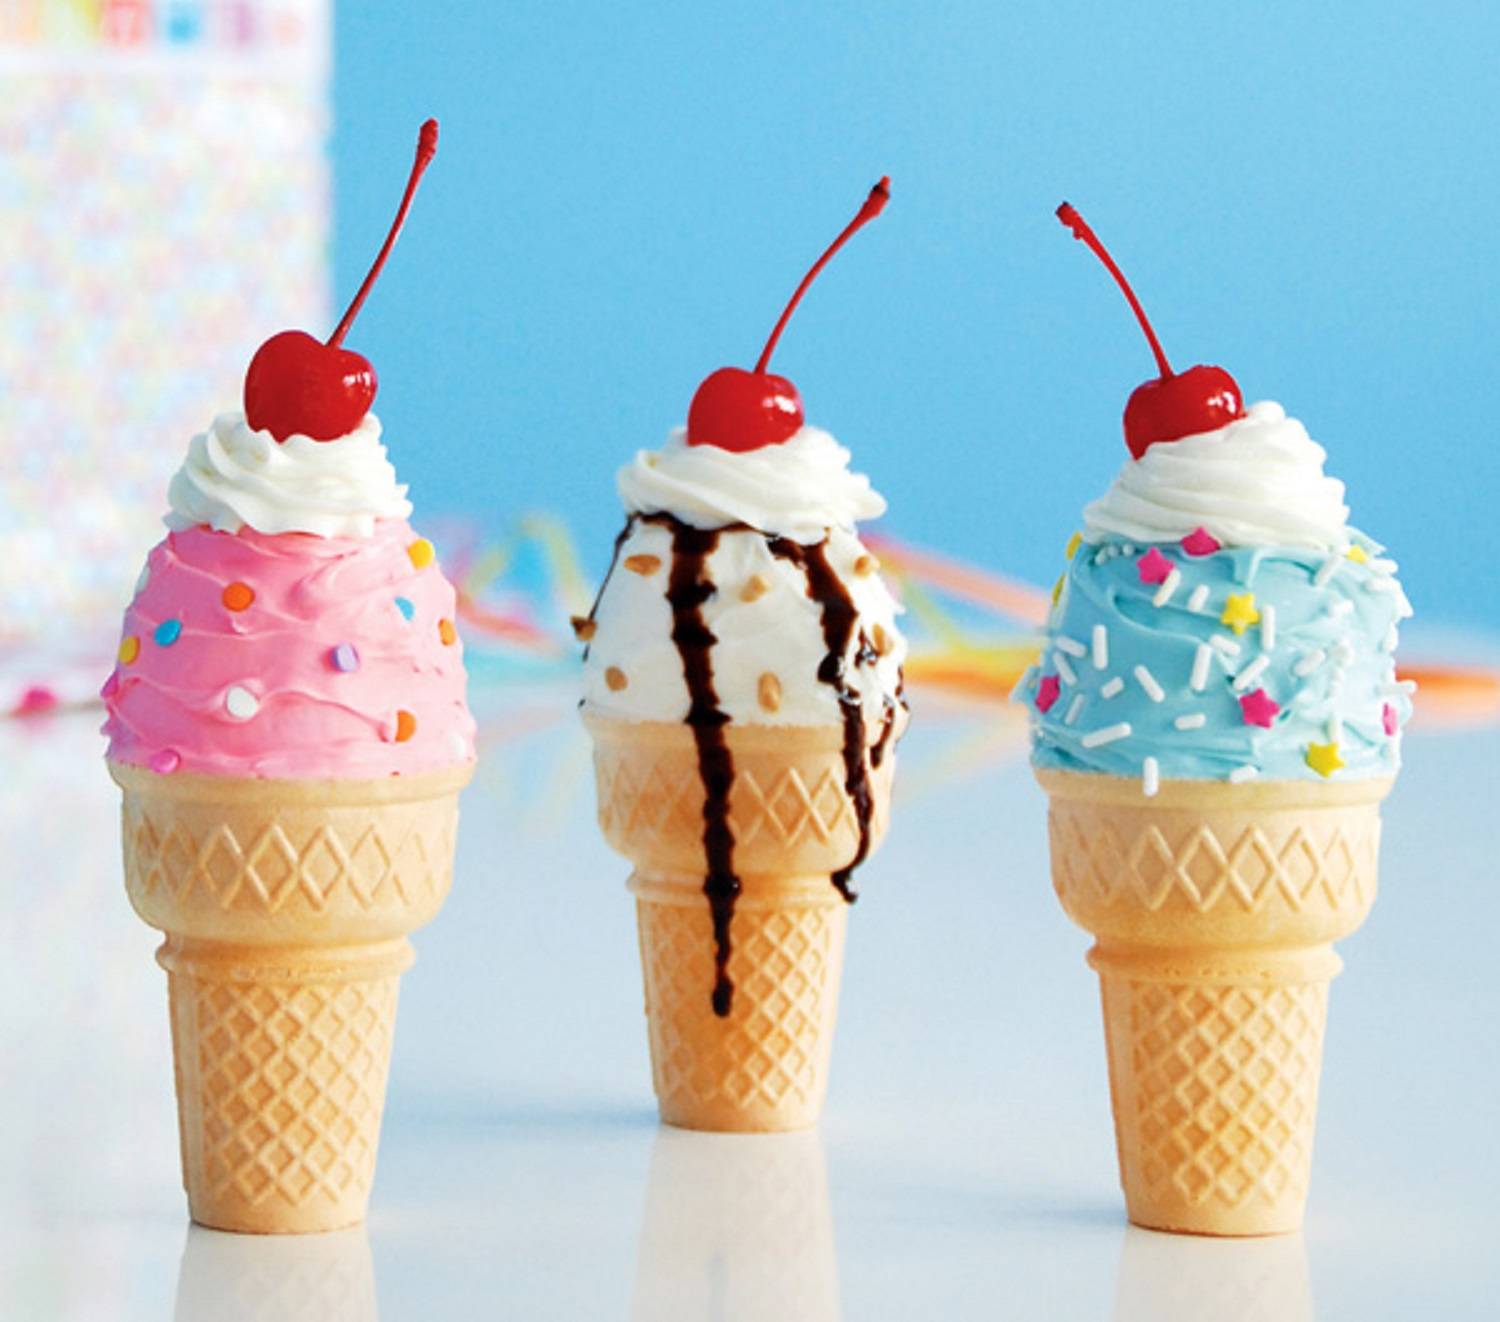  عکس خوشگل ترین بستنی قیفی های دنیا برای ساخت پوستر شیک 1402